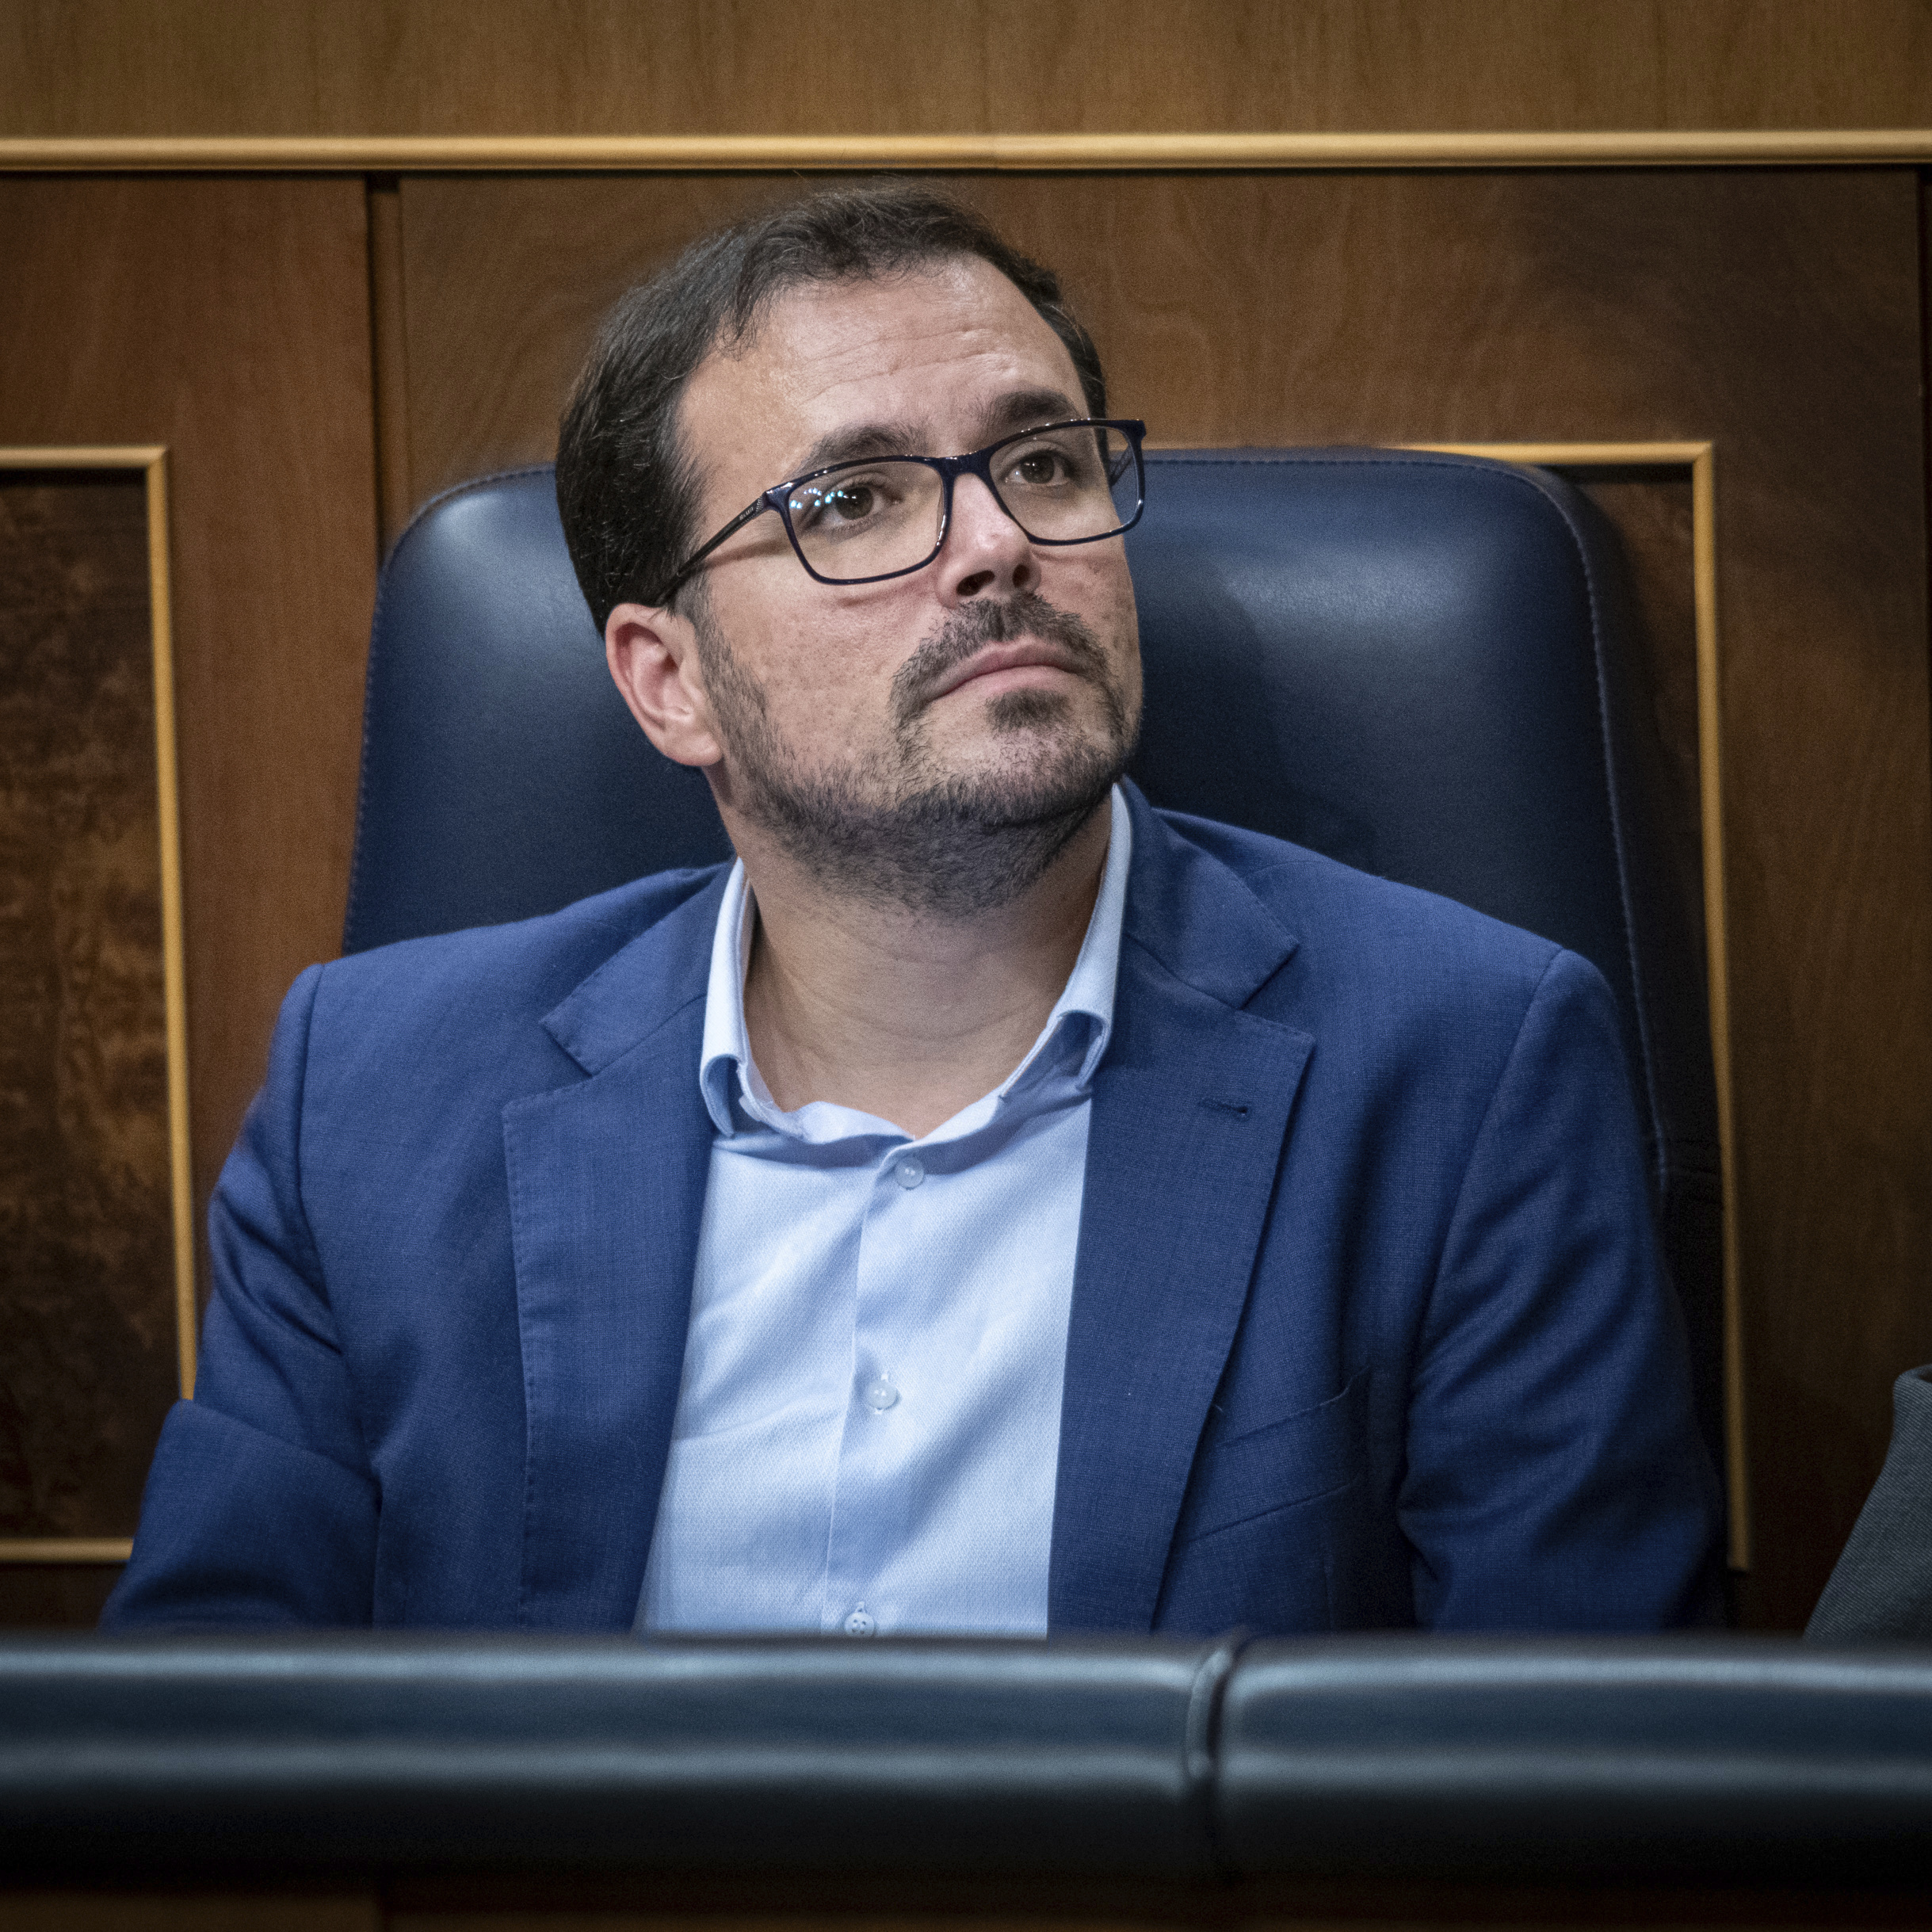 El exministro Alberto Garzón ficha por la consultora de Pepe Blanco tres meses después de salir del Gobierno